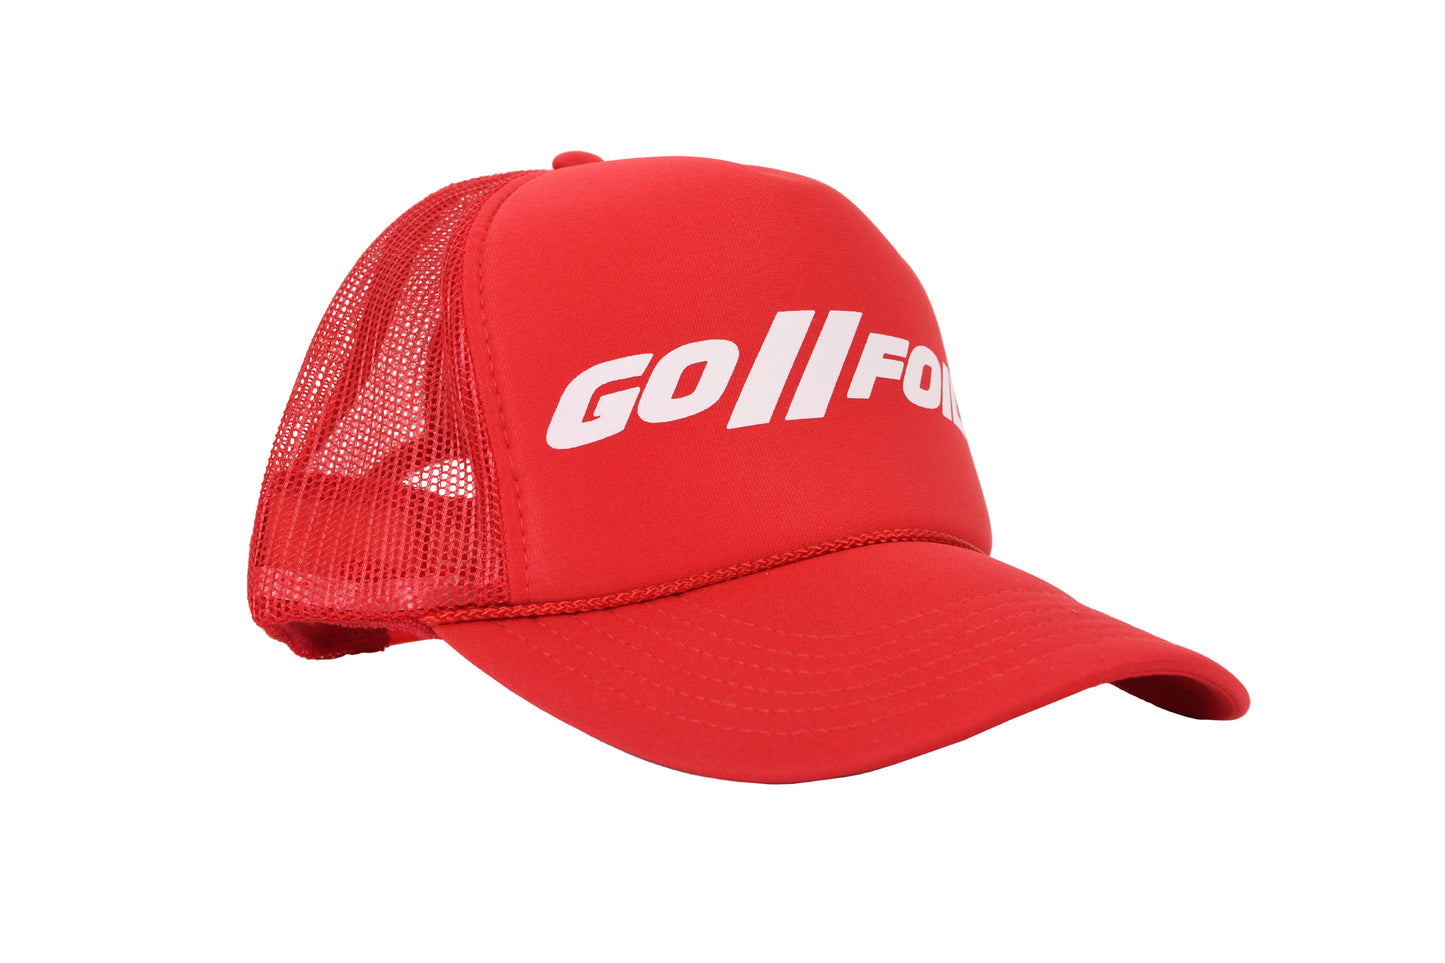 Go Foil Red Trucker Hat